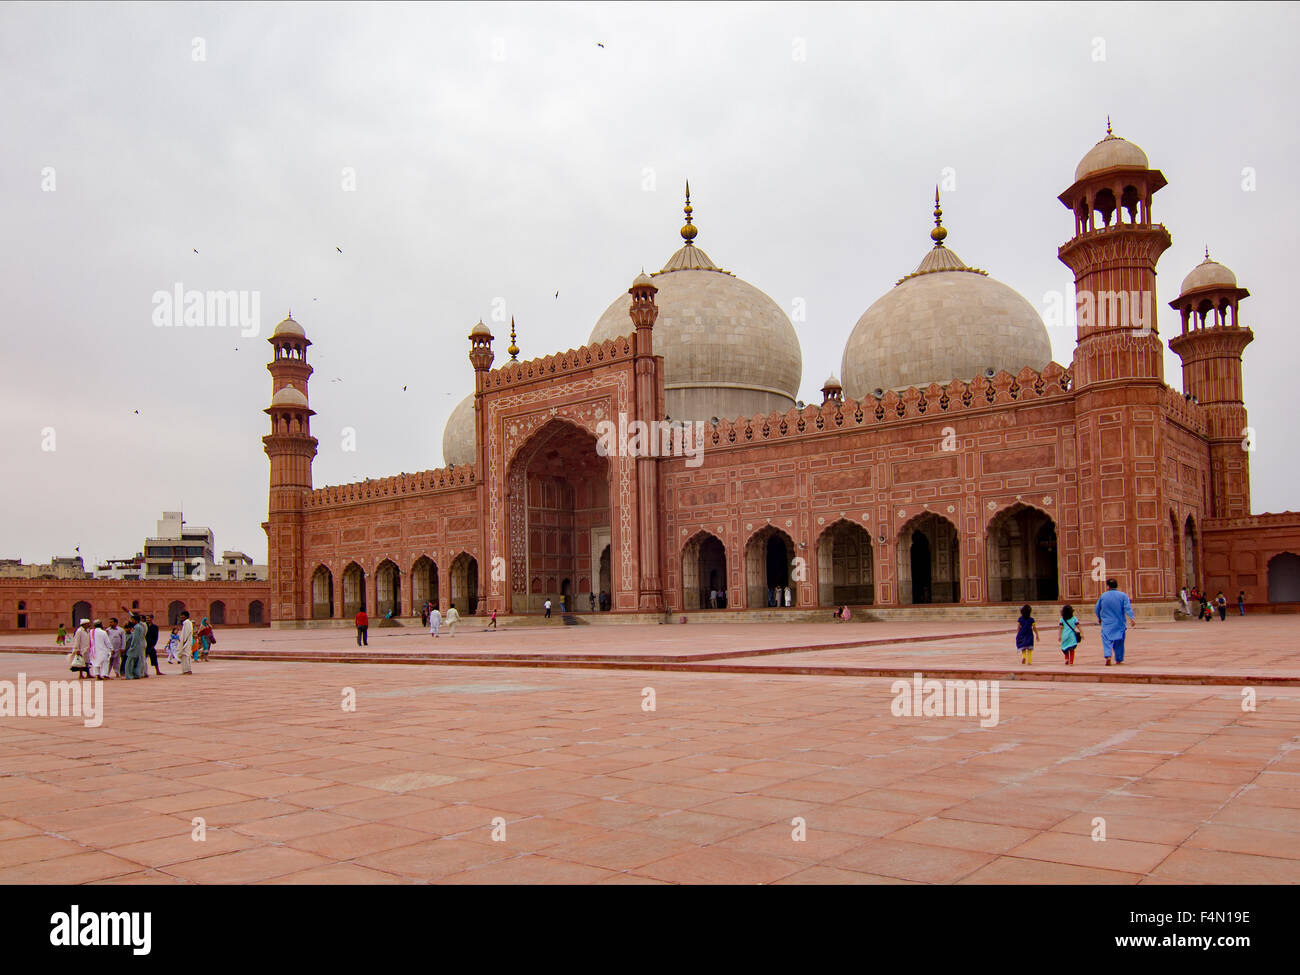 La Moschea Badshahi famoso punto di riferimento e meta turistica di Lahore, Pakistan. È anche una delle più grandi moschee del mondo Foto Stock